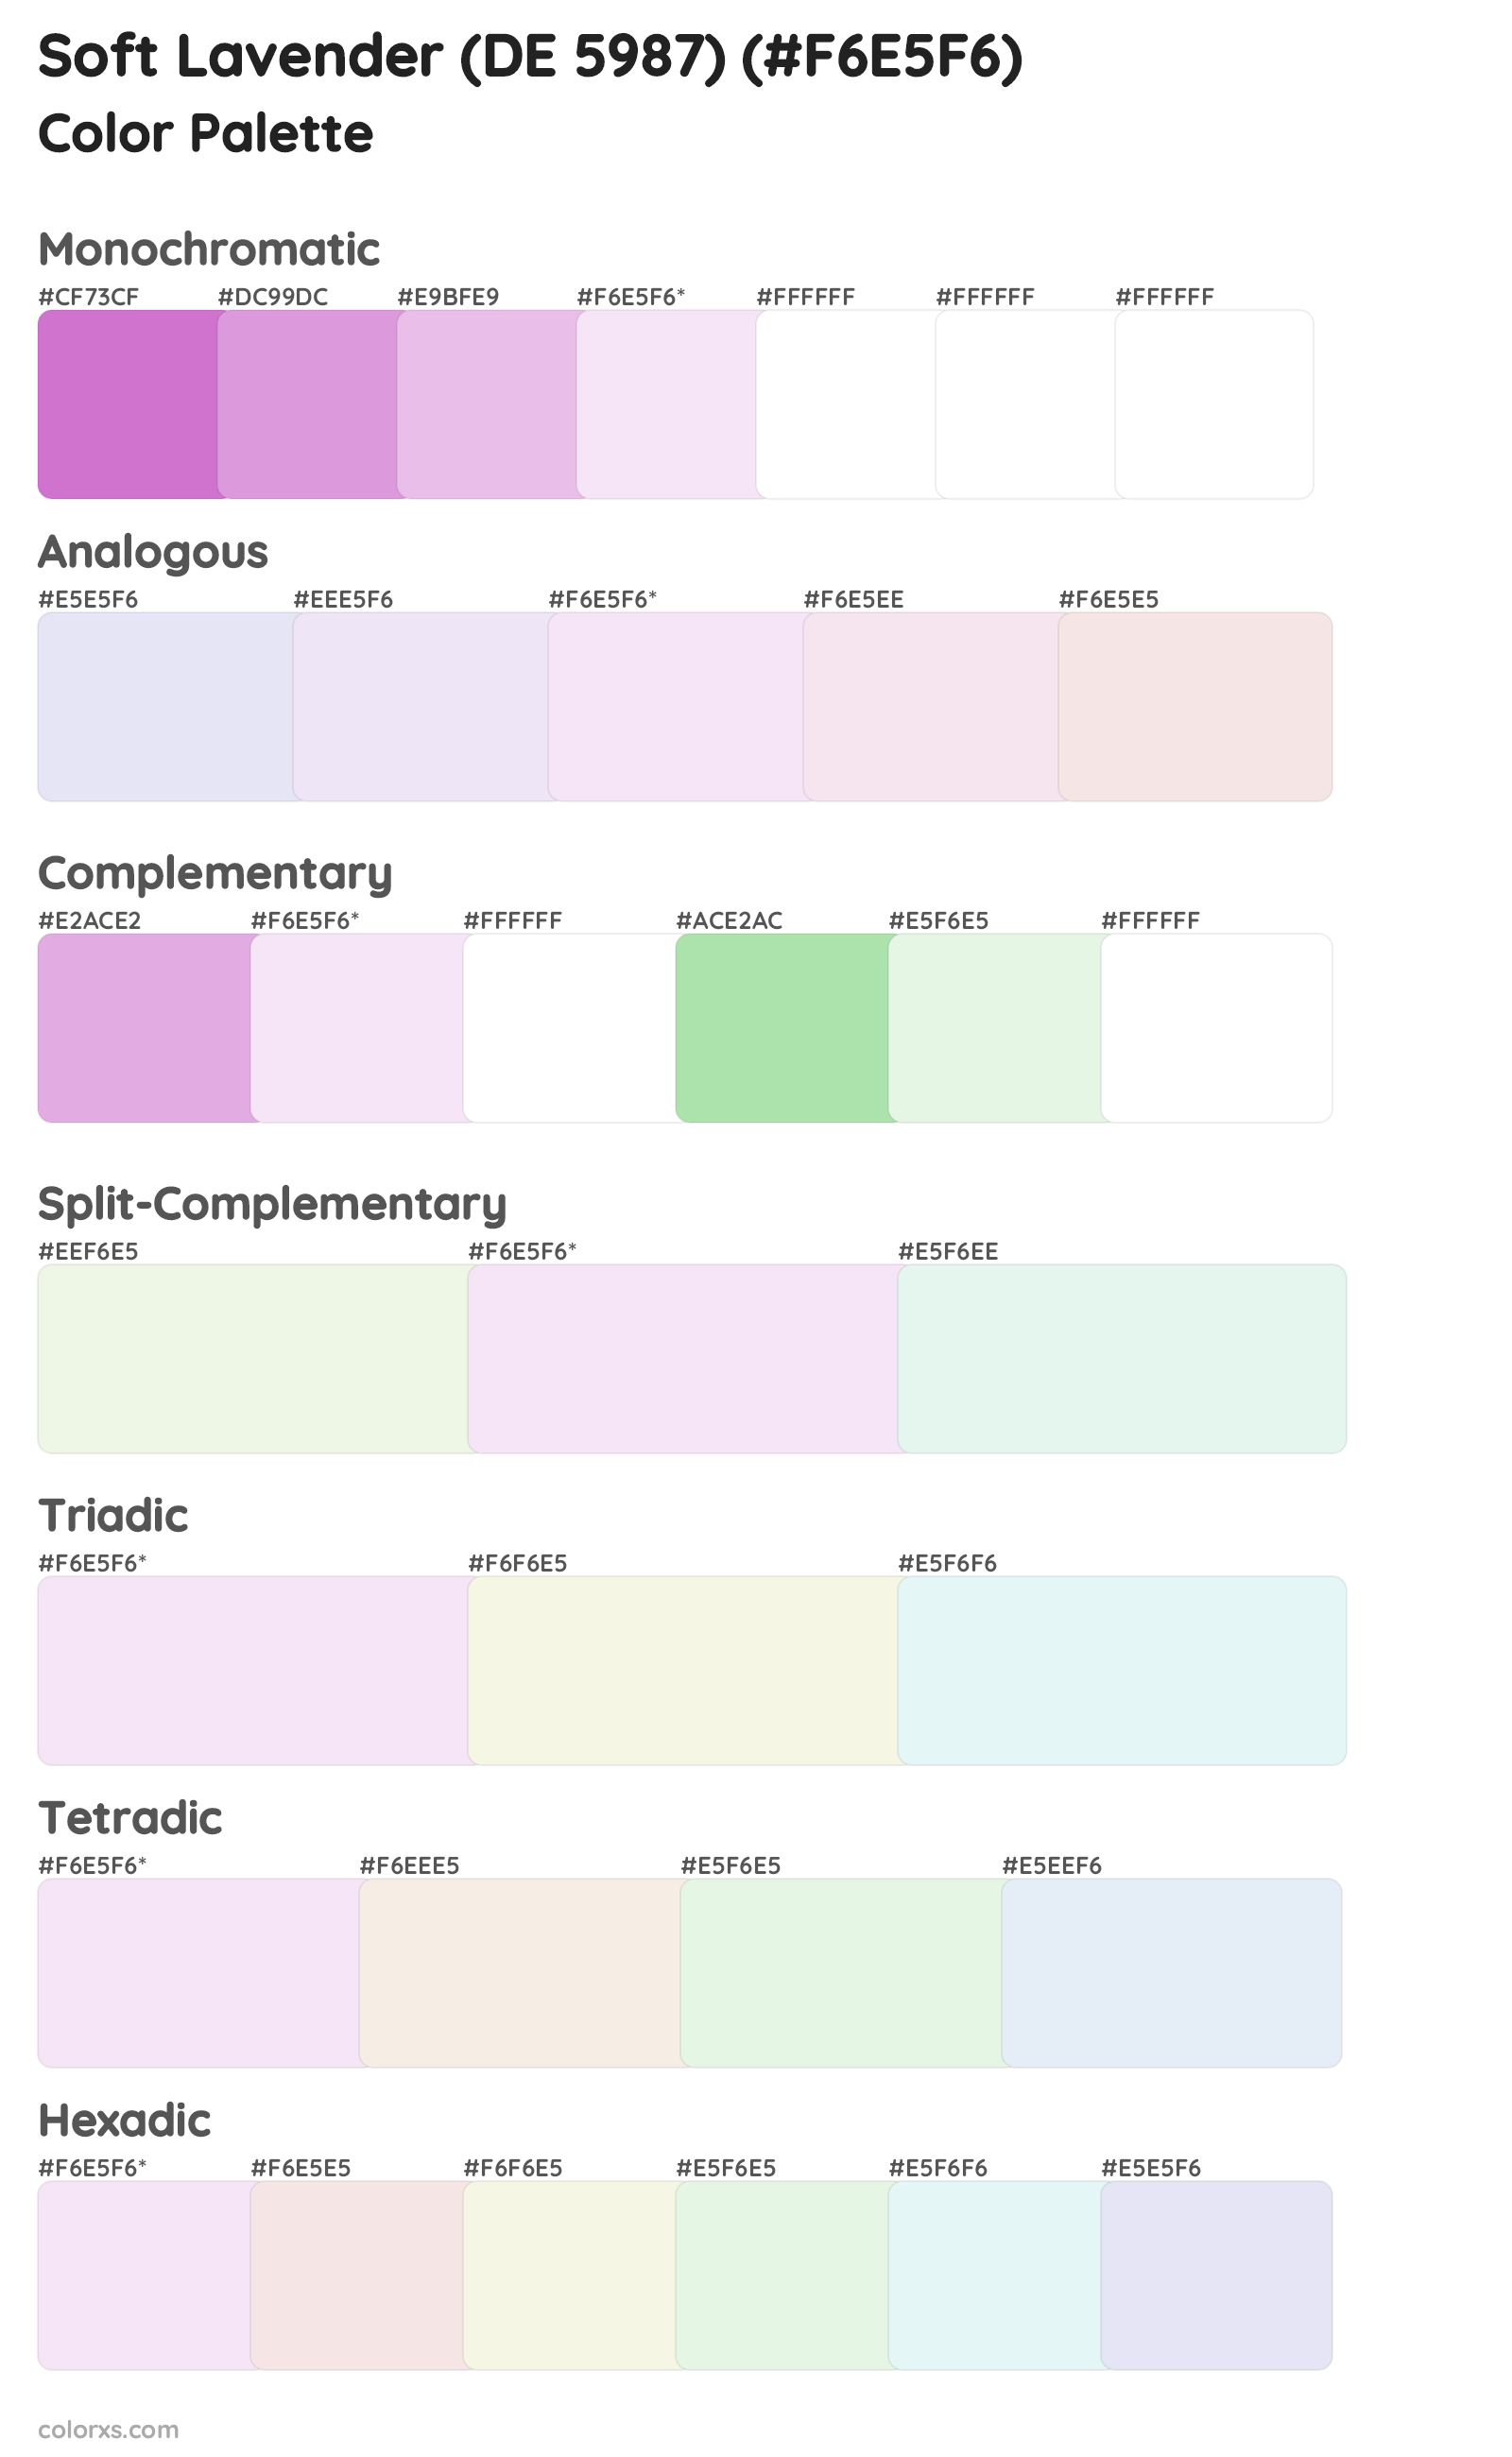 Soft Lavender (DE 5987) Color Scheme Palettes